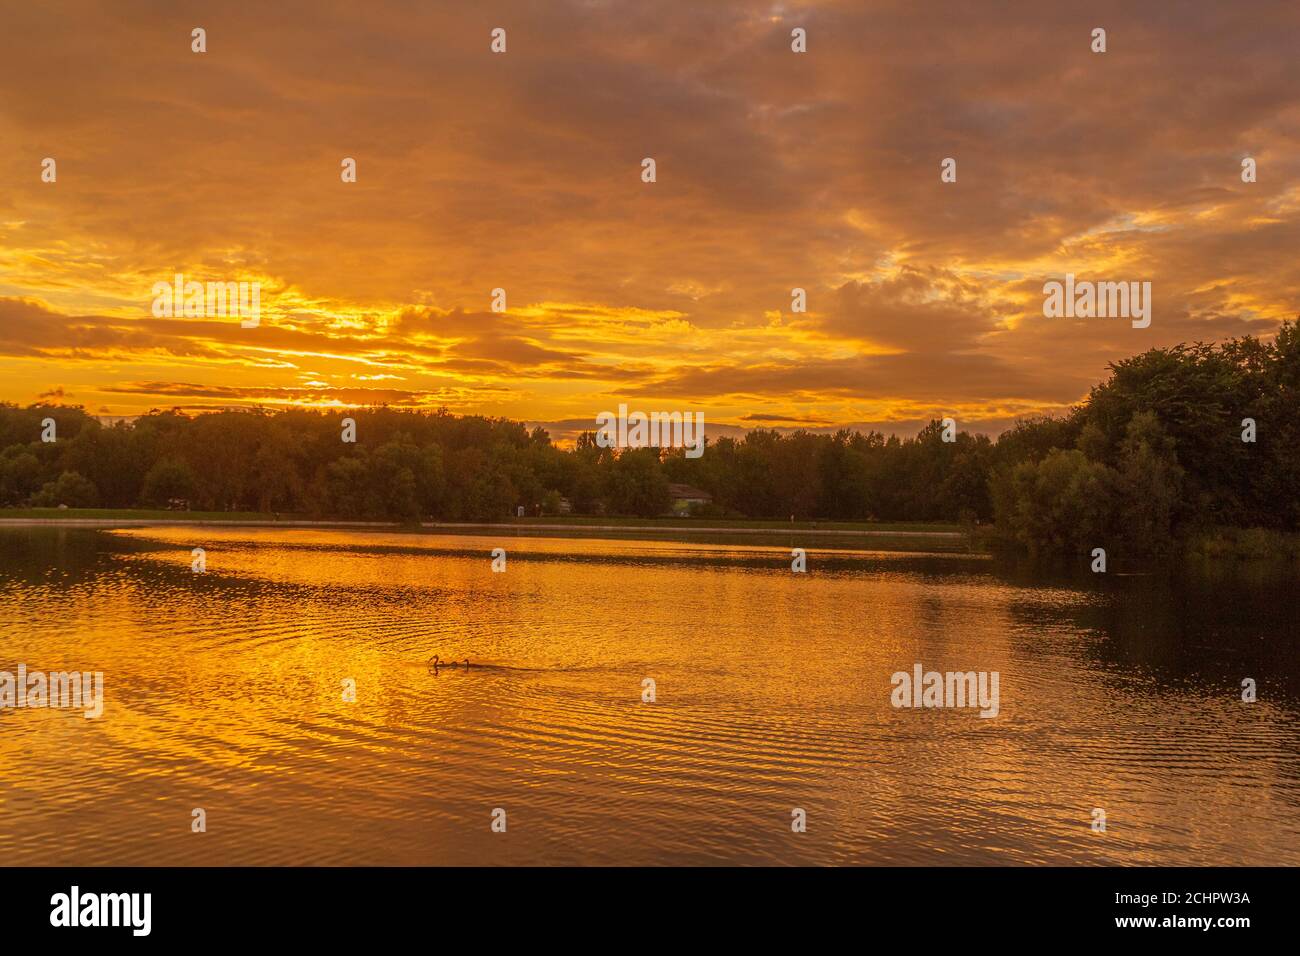 Spiegelung der Sonne im Wasser bei orangefarbenem Sonnenuntergang. Sonnenuntergang auf einem großen See. Stockfoto